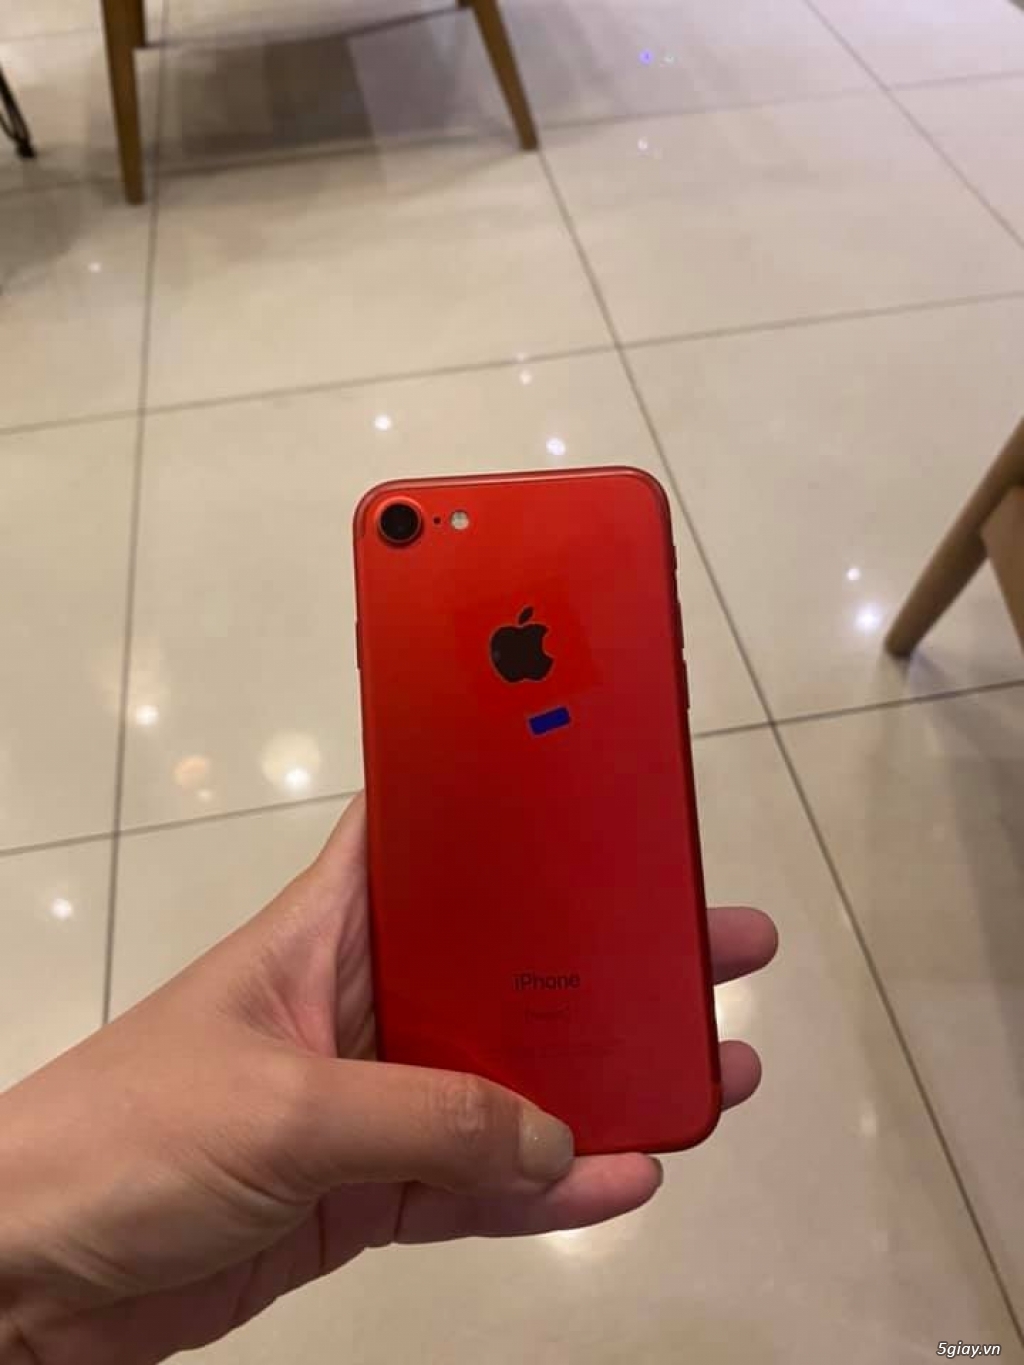 iphone7 128g đỏ quốc tế máy máy mới xài đươc mấy ngày như mới - 3